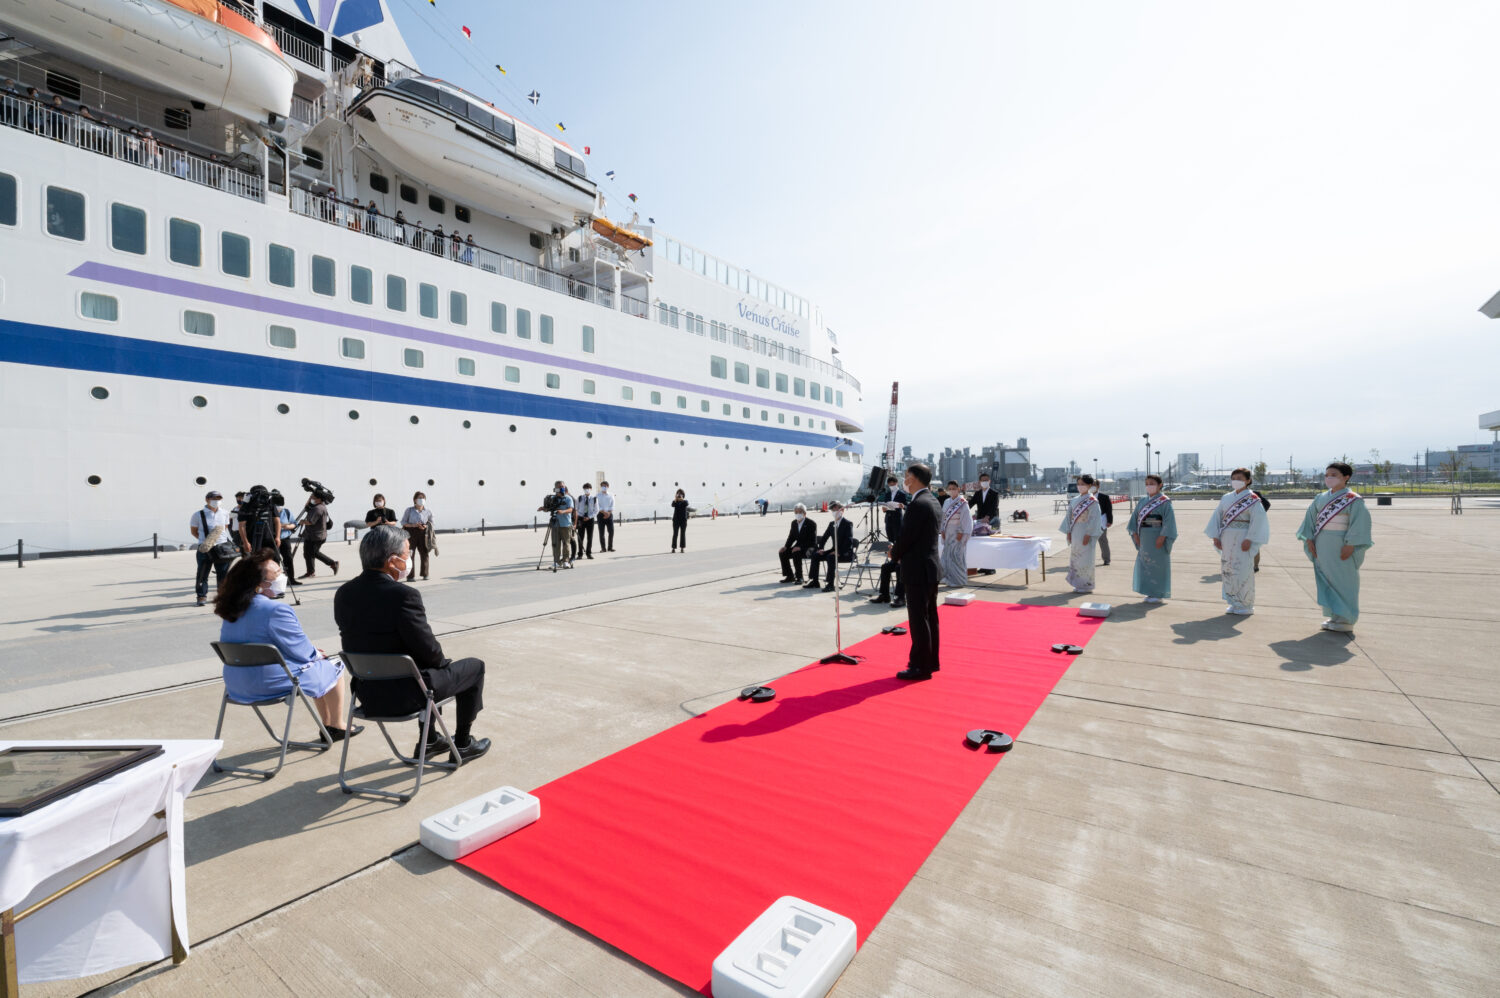 神戸港・金沢港の連携協定記念クルーズ第1弾実施、歓迎セレモニーも開催